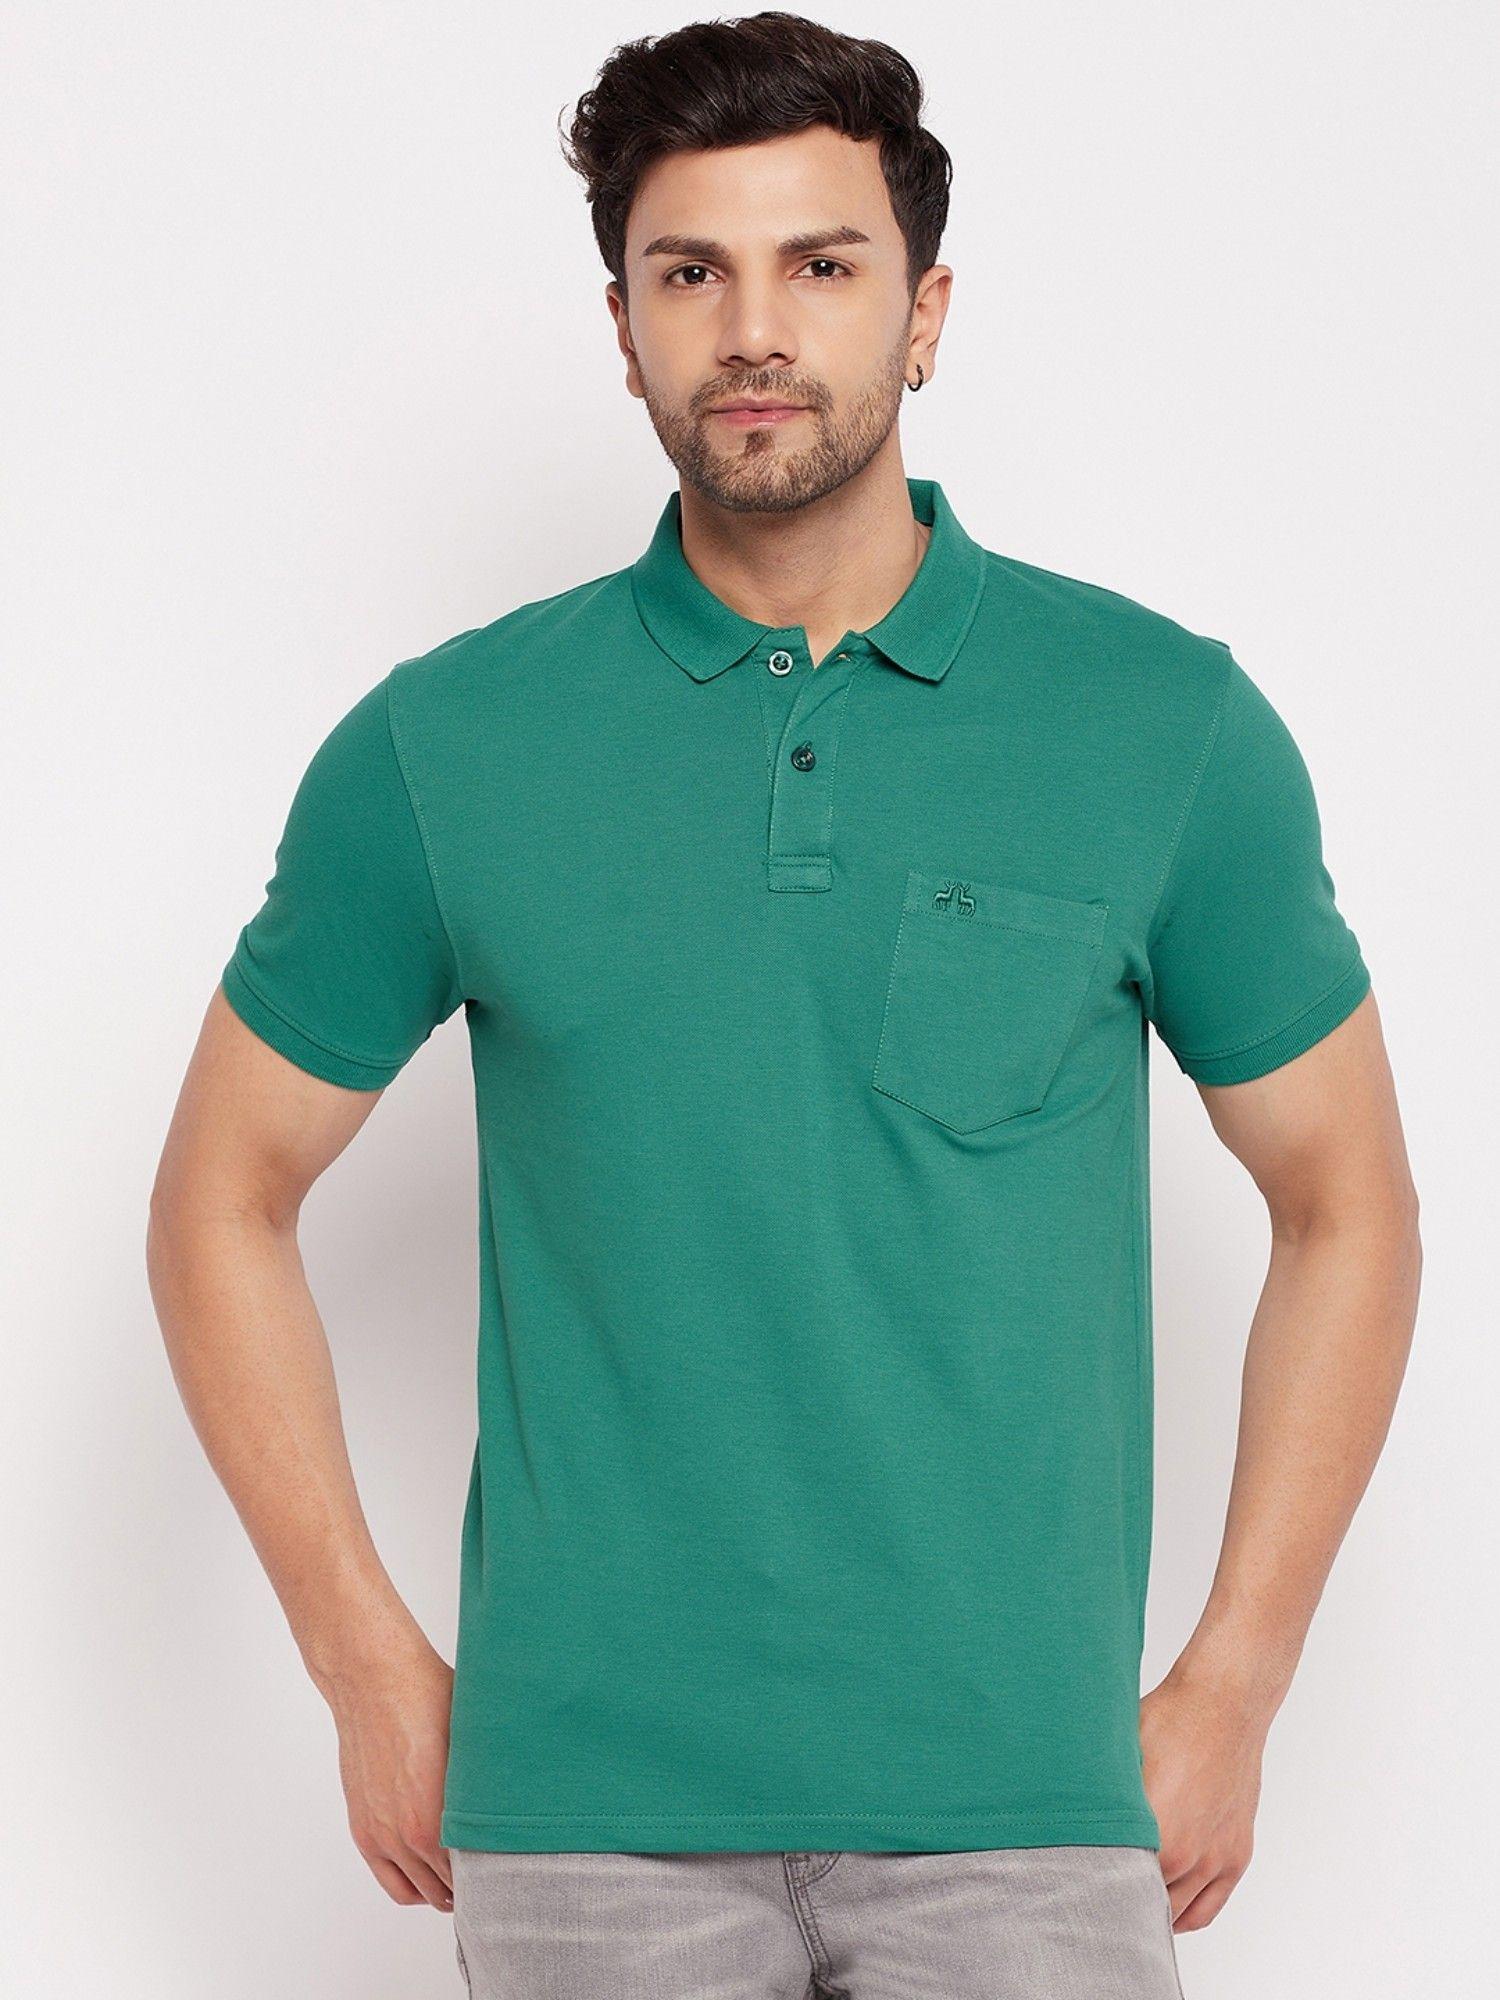 mens cotton lycra green polo neck t-shirt